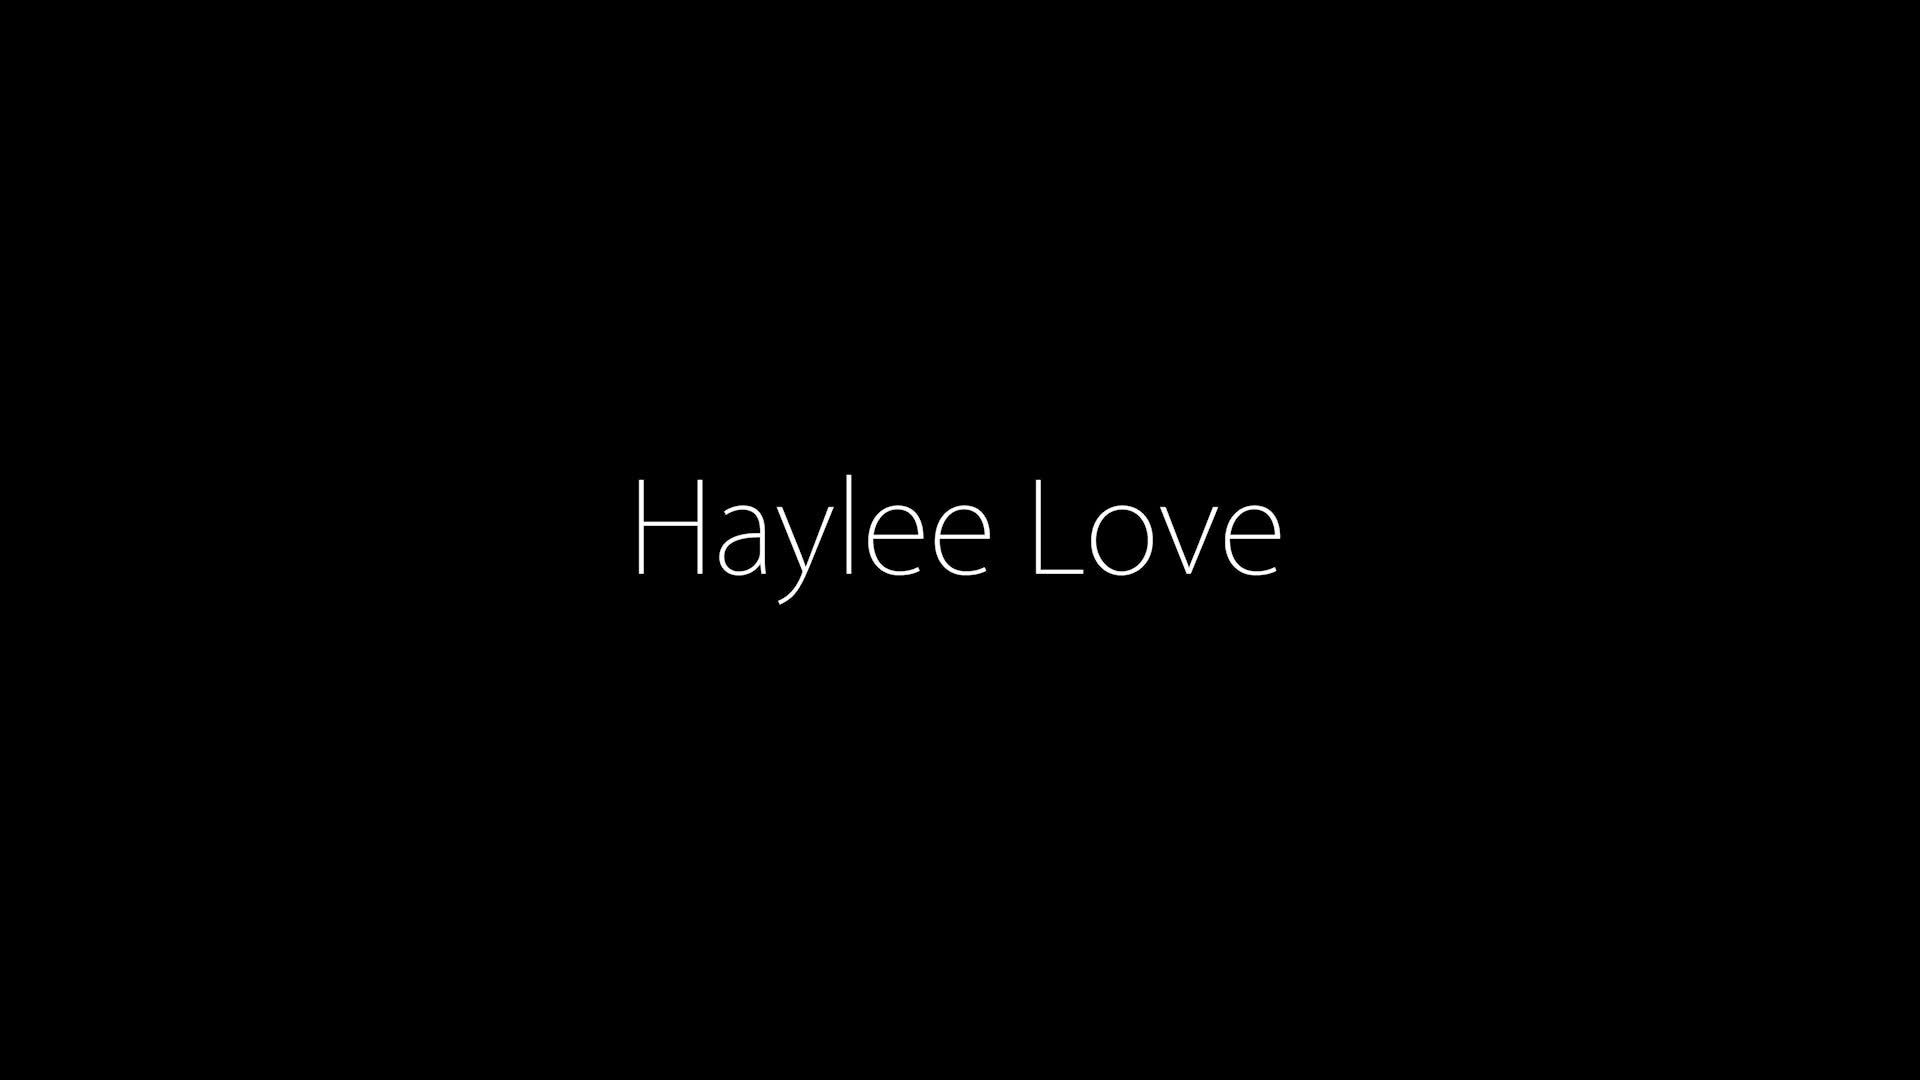 FREE: Haylee Love Teaser Video